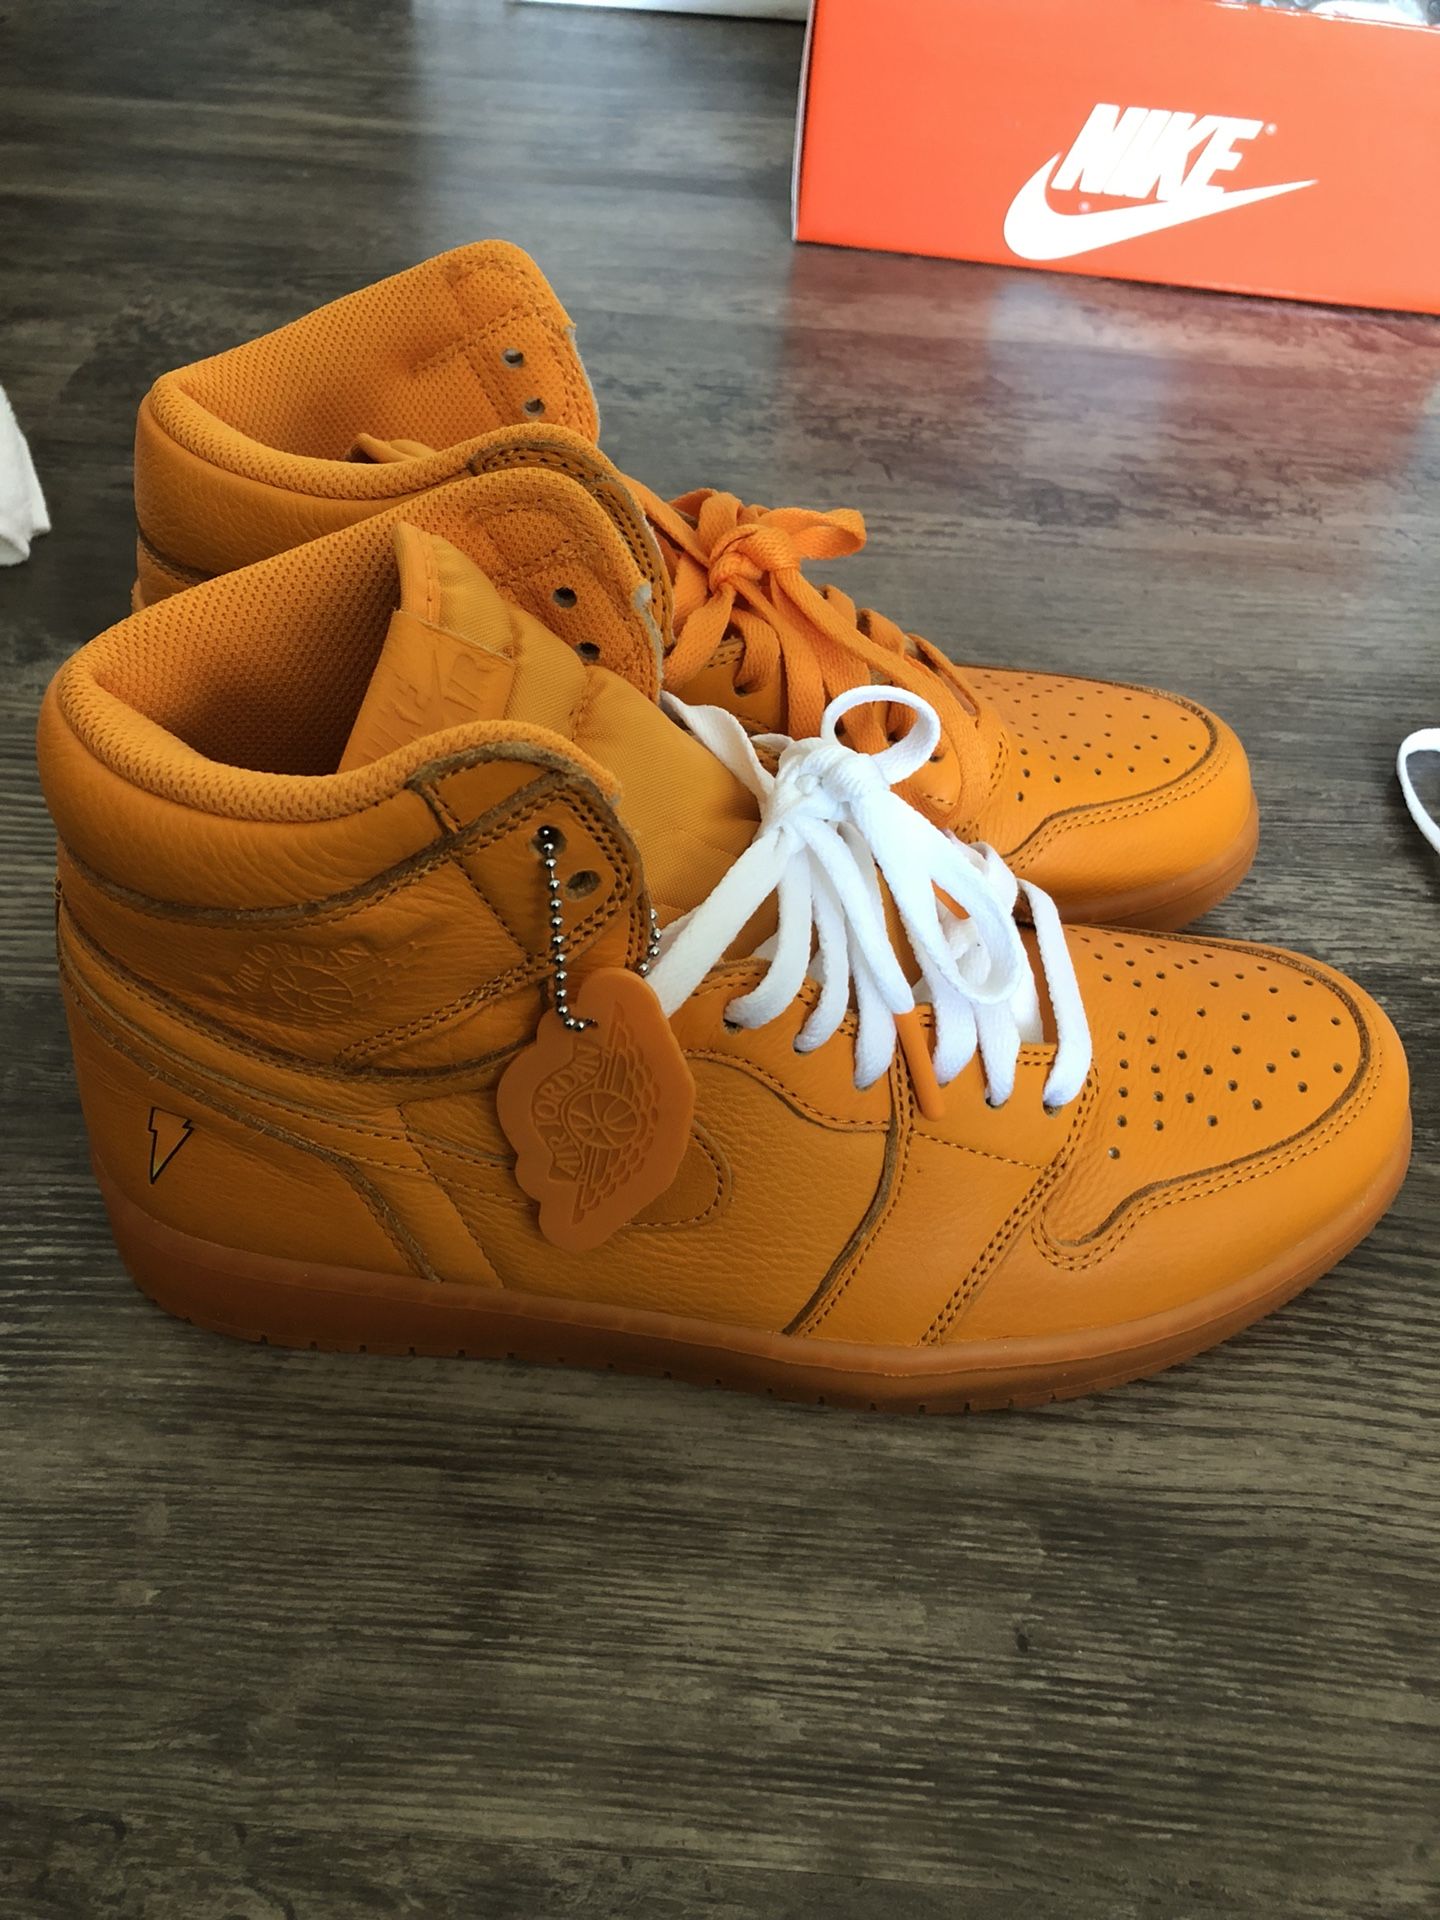 Orange Gatorade Jordan 1